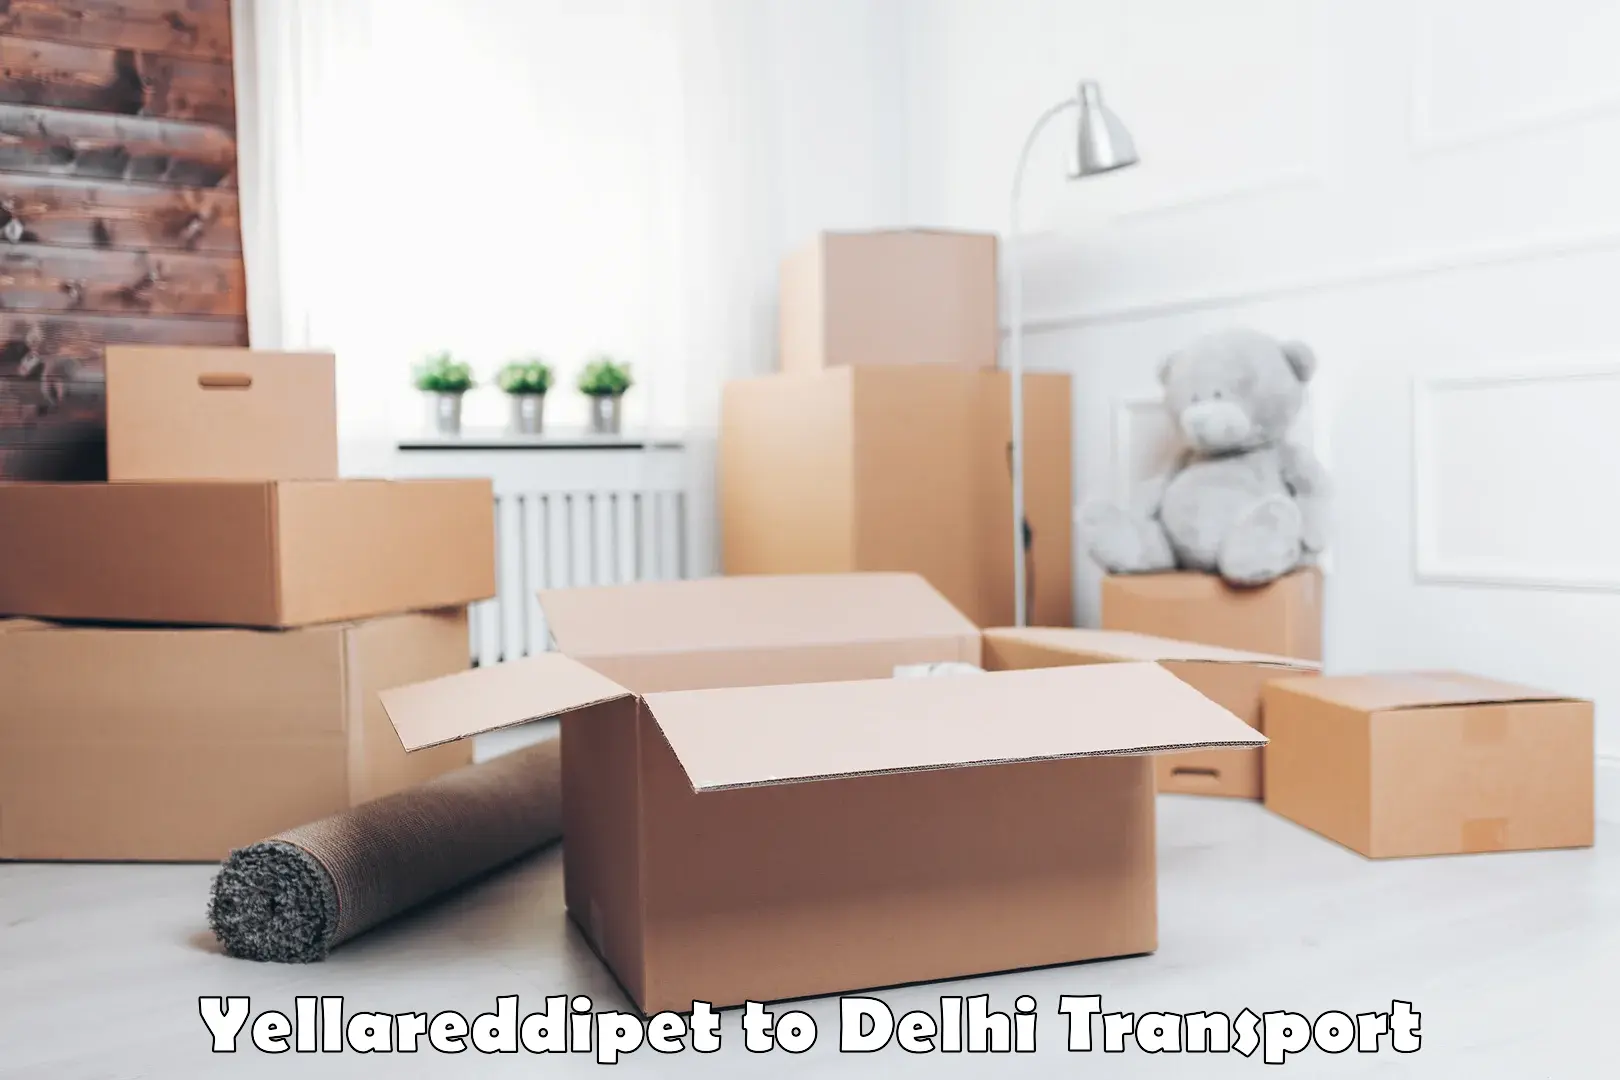 All India transport service Yellareddipet to Delhi